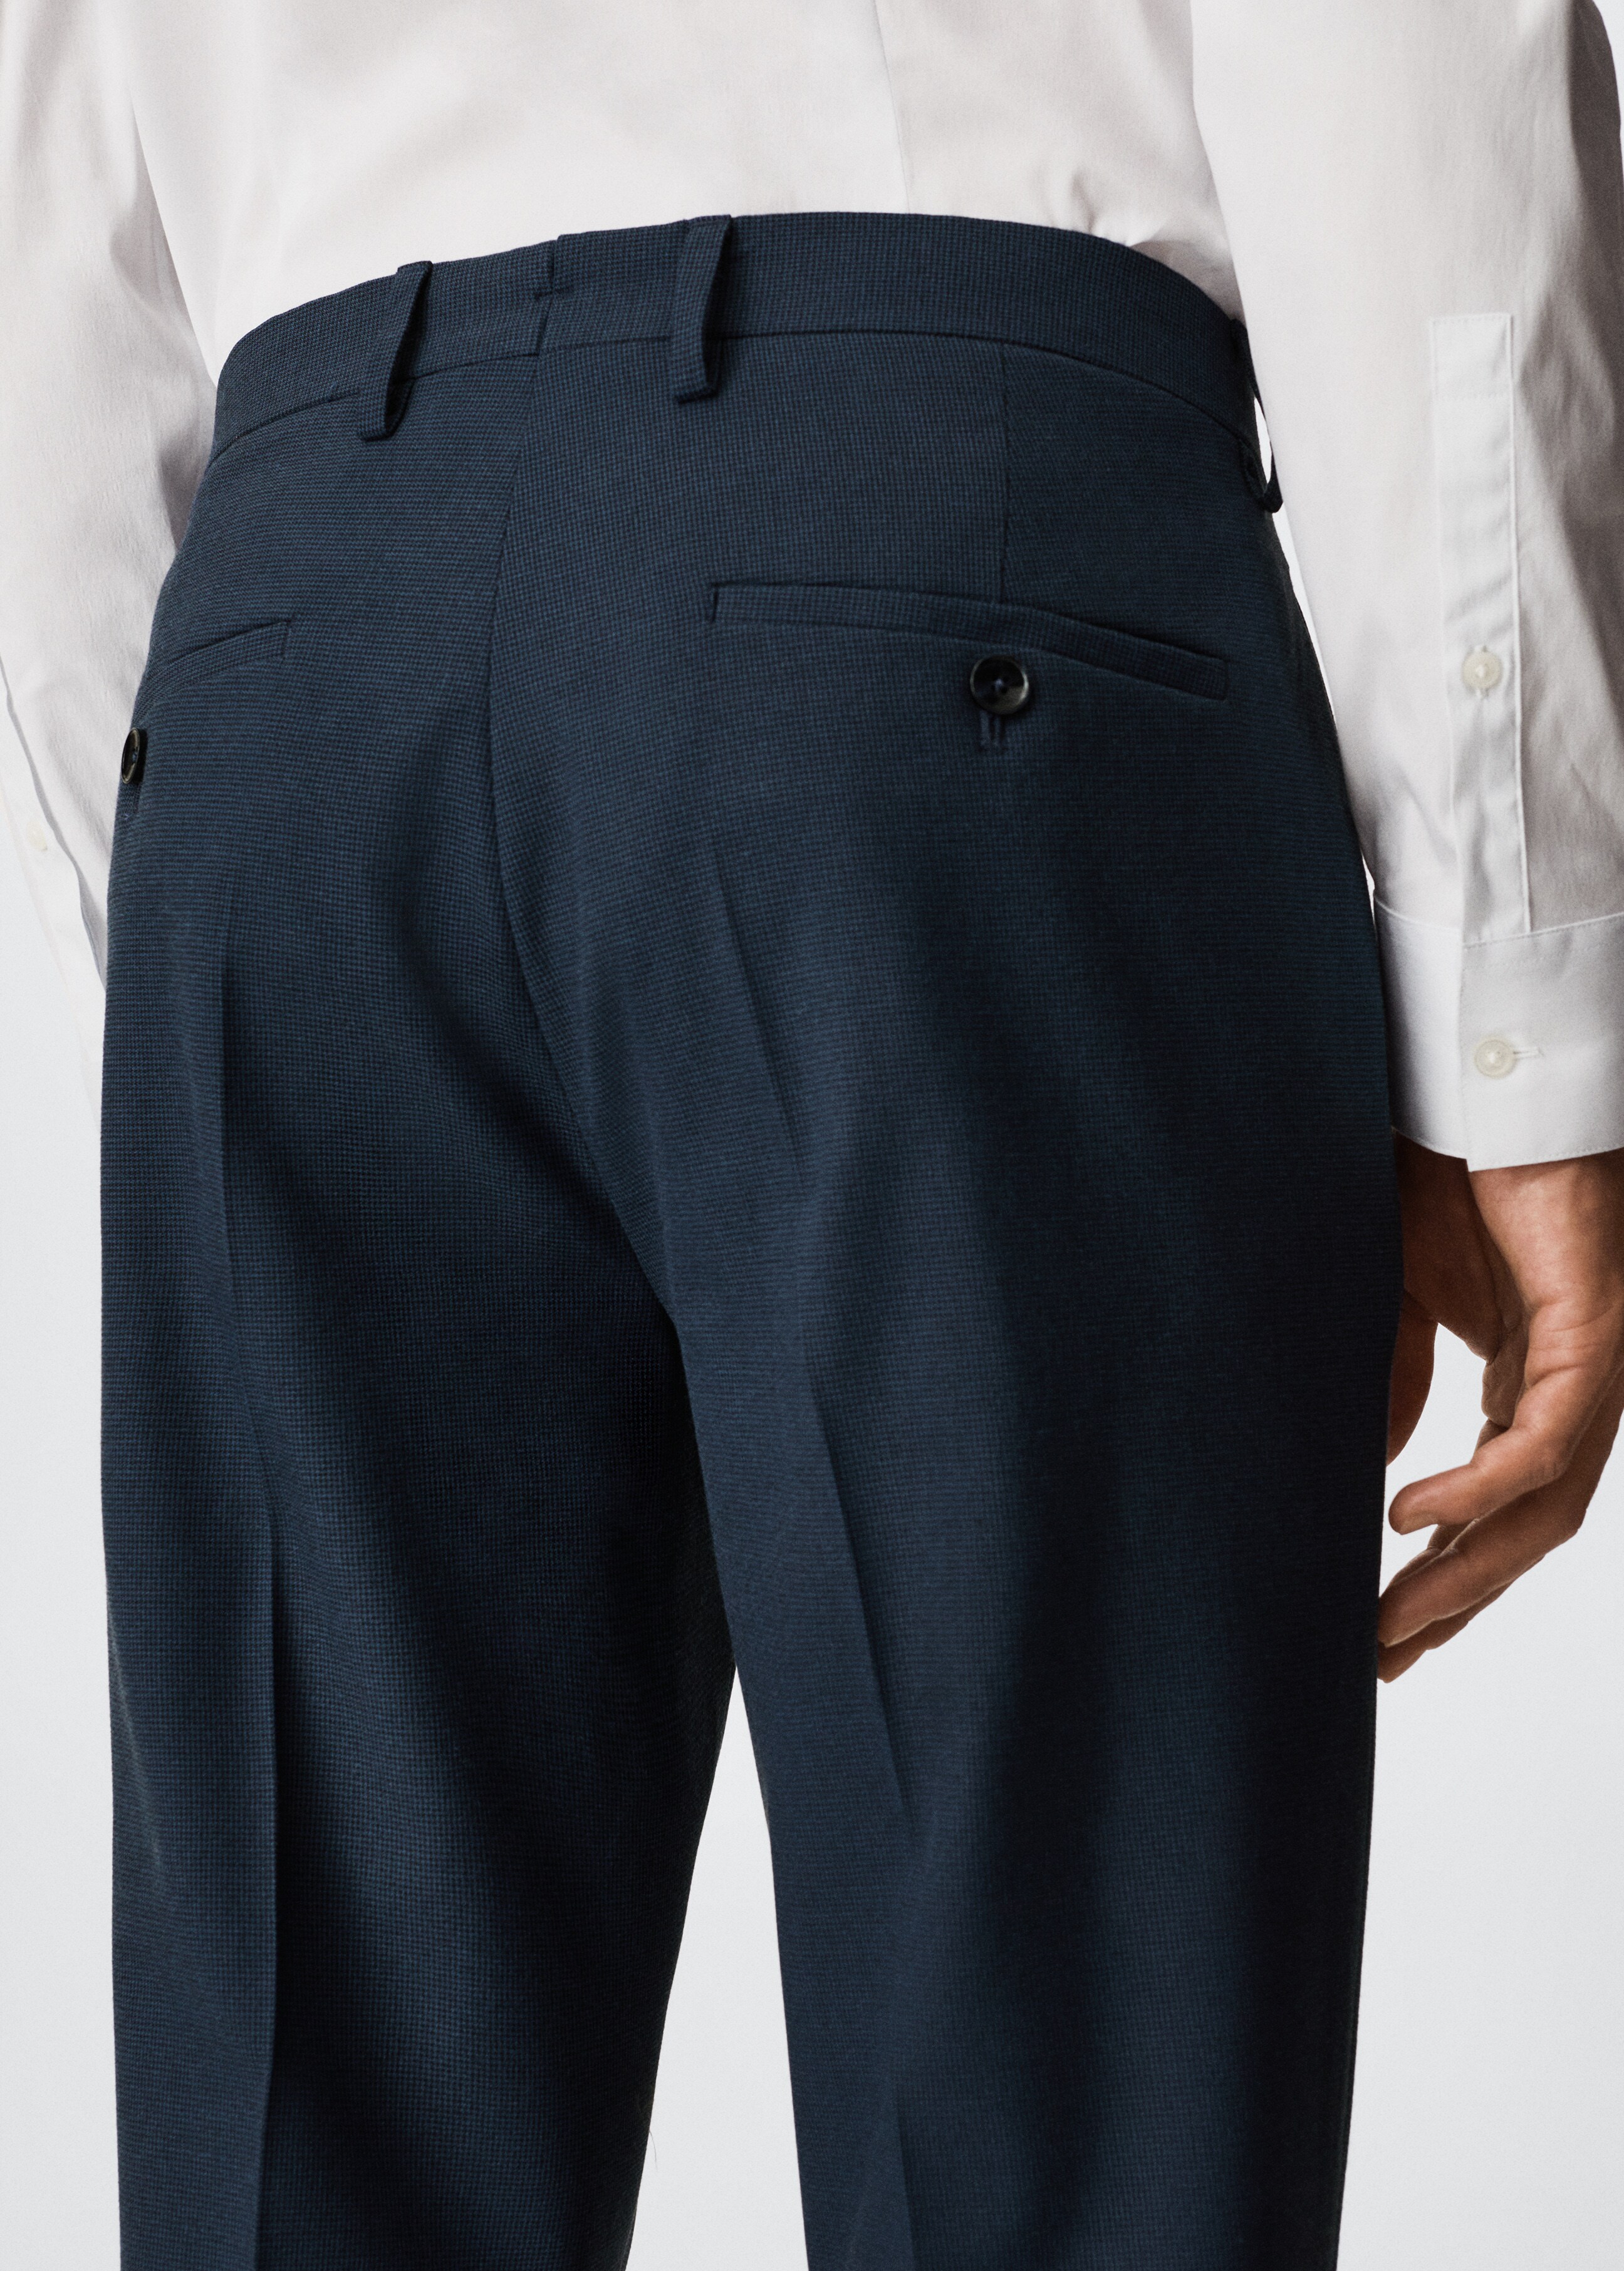 Pantalón traje super slim fit microestructura - Detalle del artículo 3